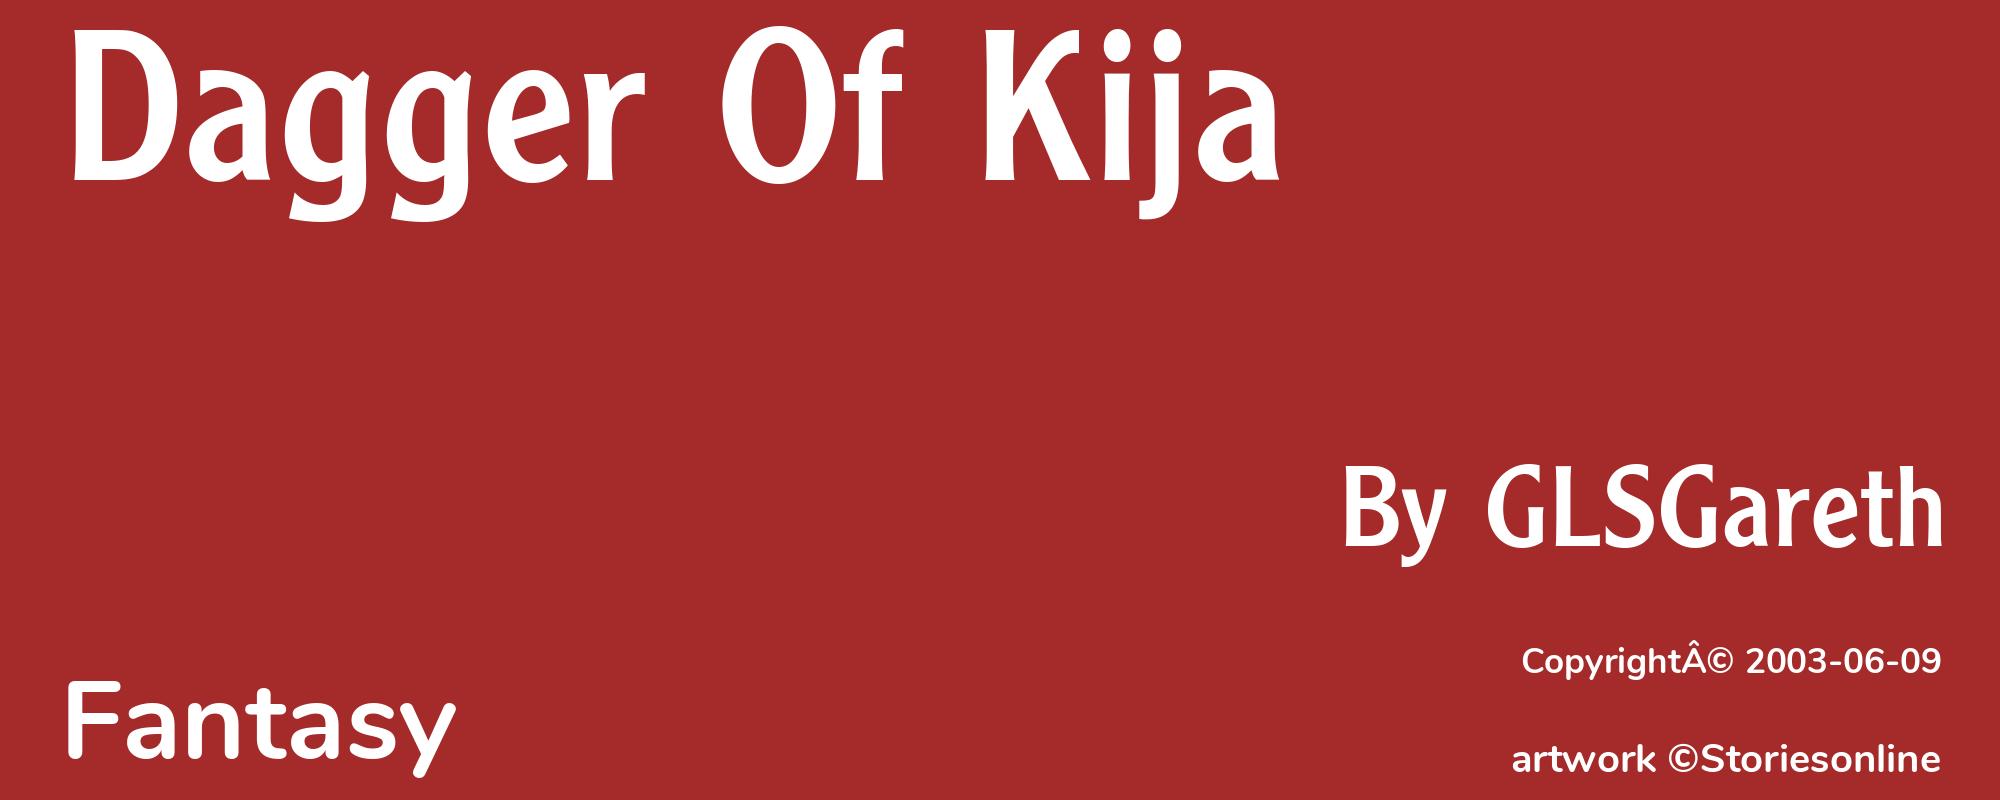 Dagger Of Kija - Cover